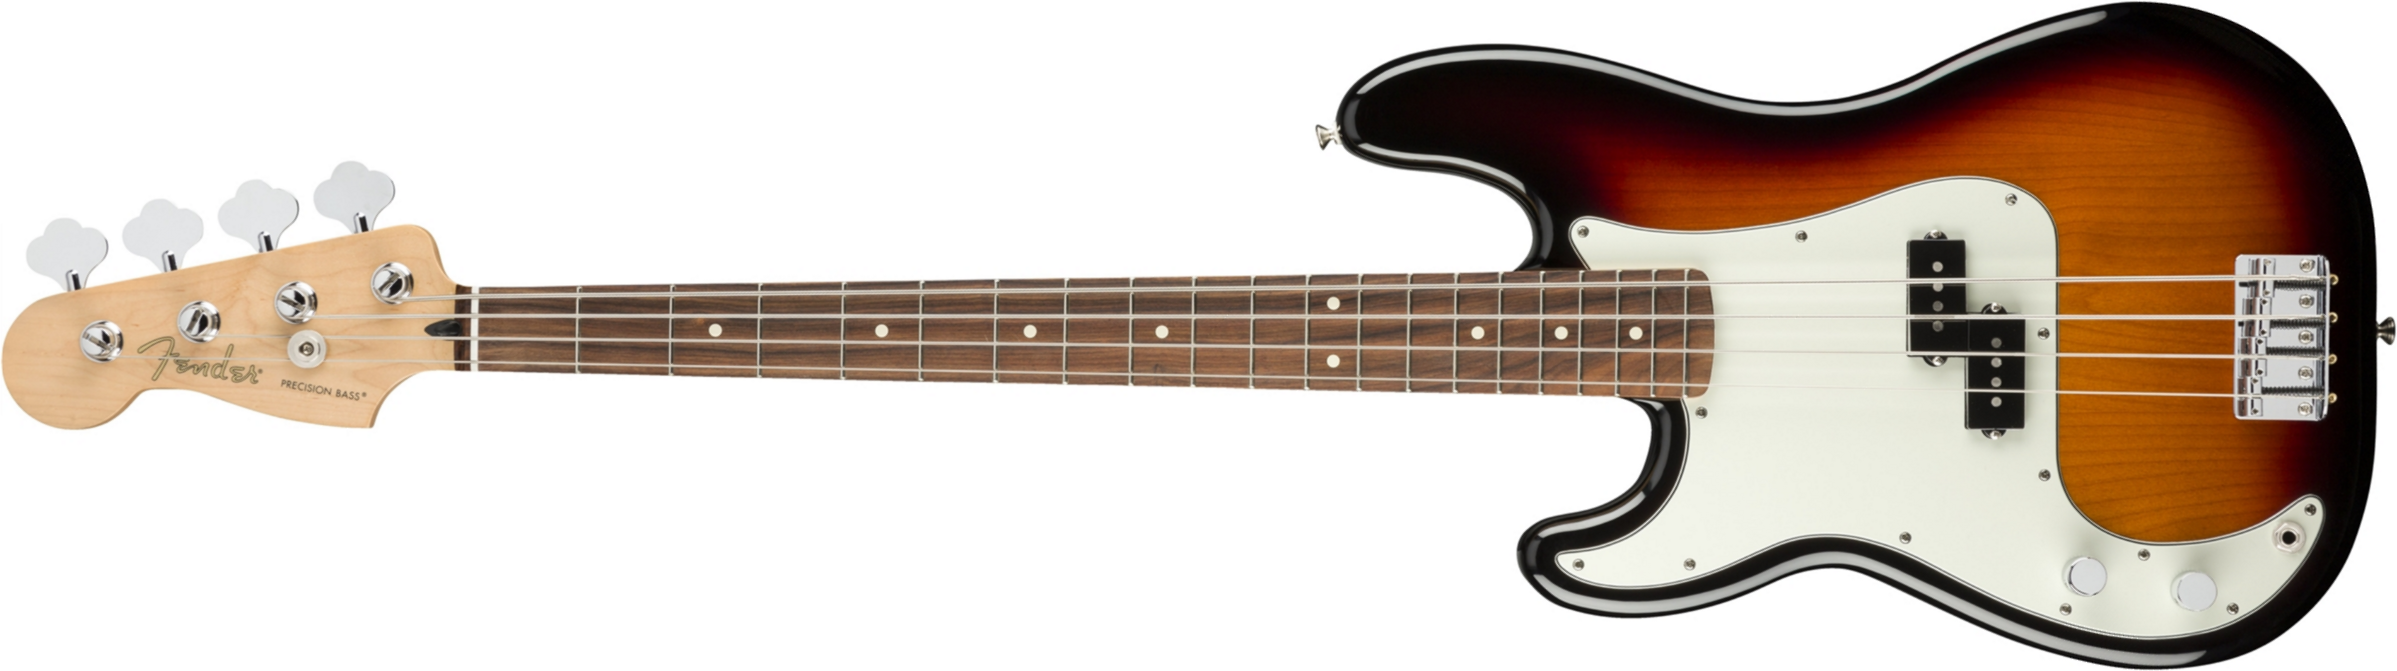 Fender Precision Bass Player Lh Gaucher Mex Pf - 3-color Sunburst - Basse Électrique Solid Body - Main picture